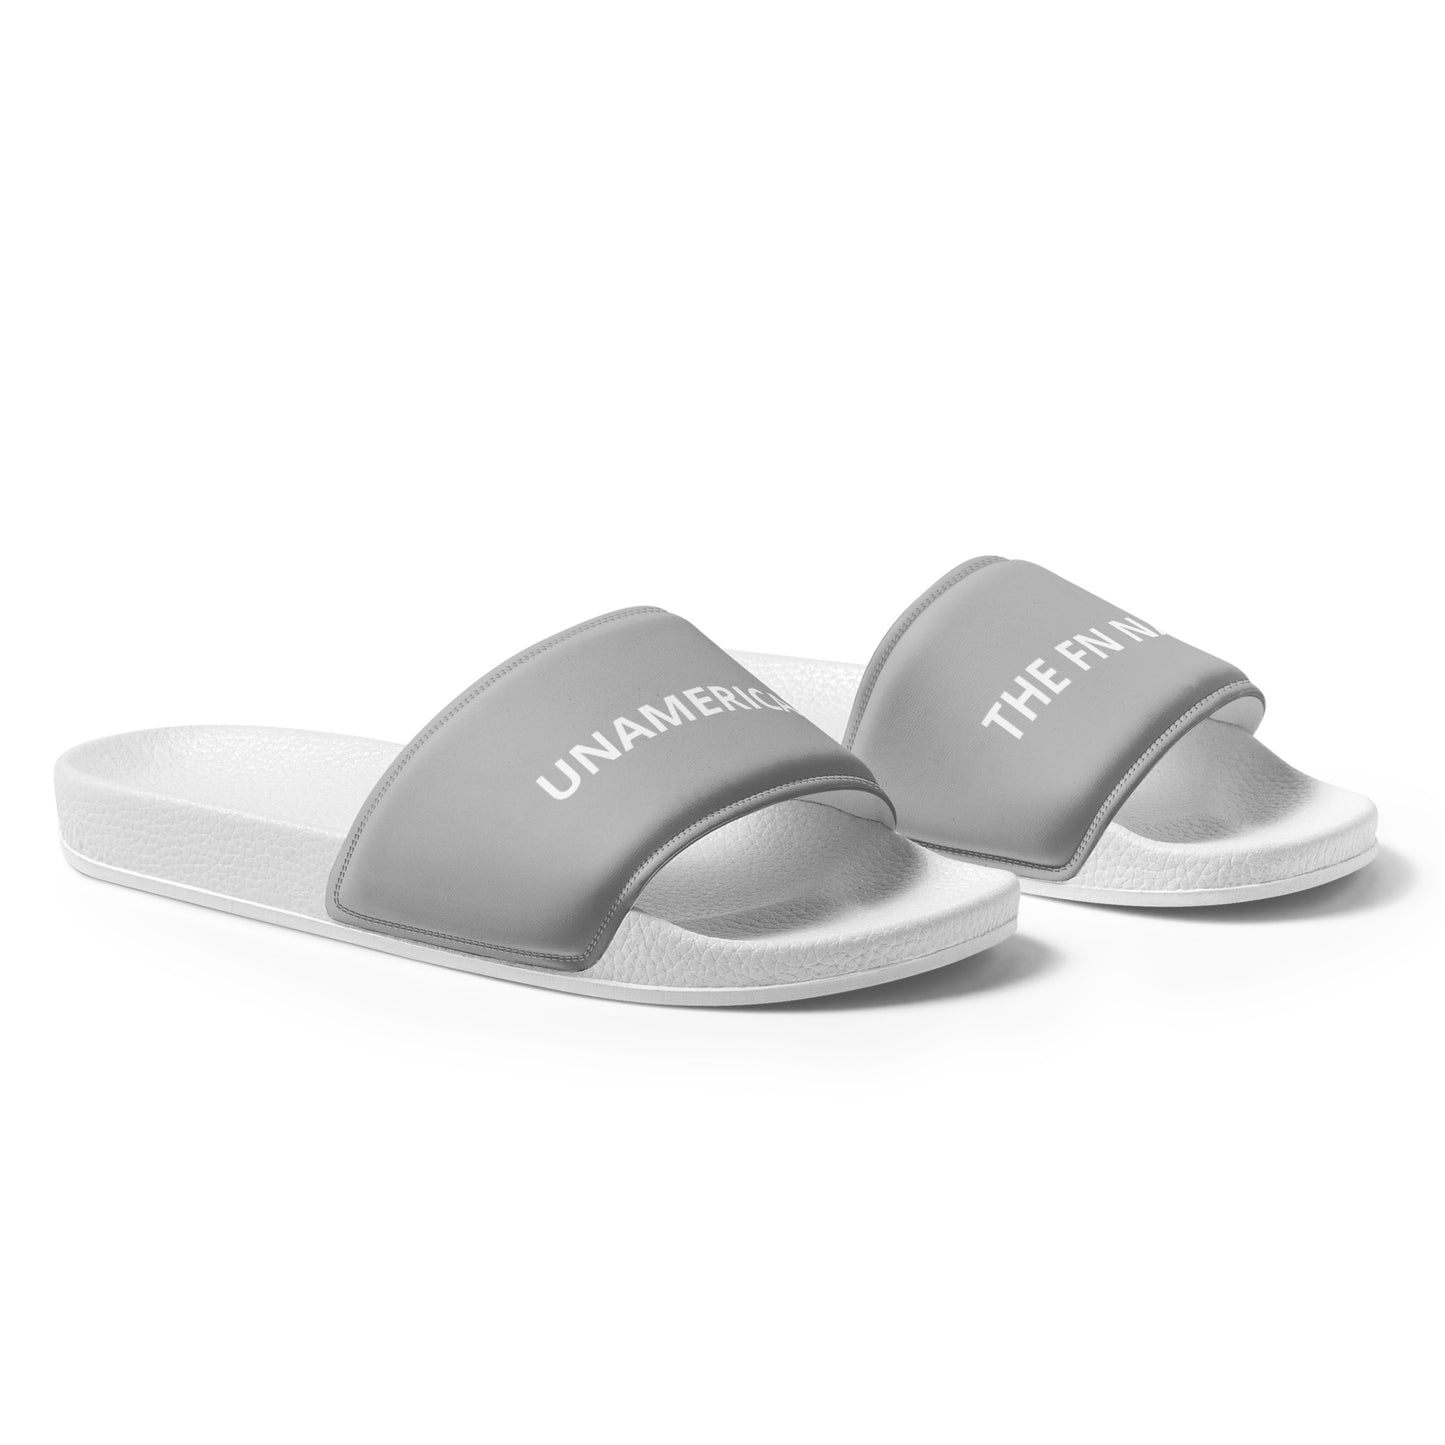 FN UNAMERICAN WOMEN'S: LAX Slides (white/silver)